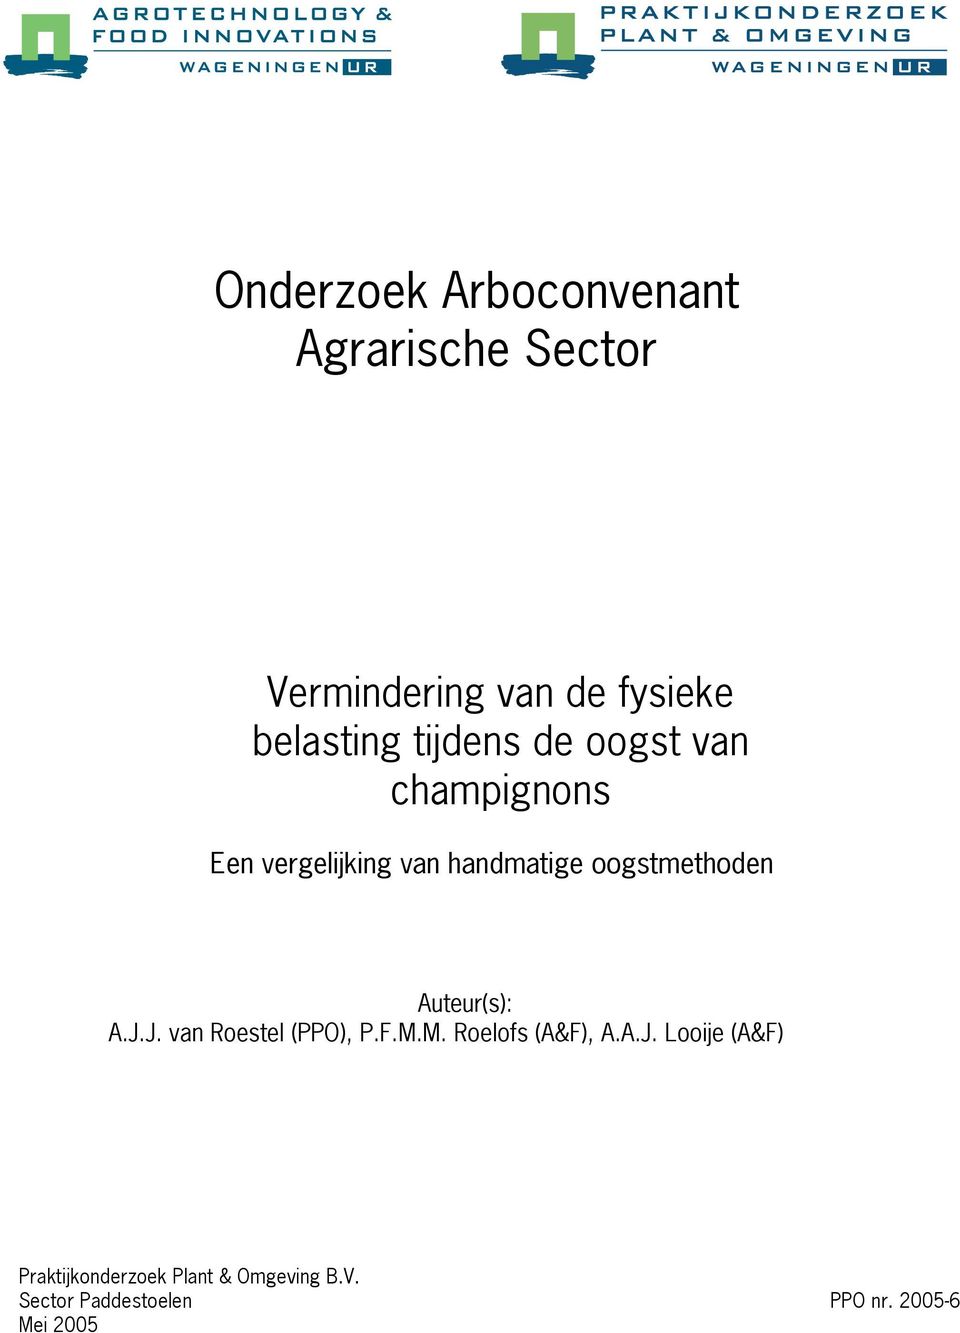 Auteur(s): A.J.J. van Roestel (PPO), P.F.M.M. Roelofs (A&F), A.A.J. Looije (A&F) Praktijkonderzoek Plant & Omgeving B.